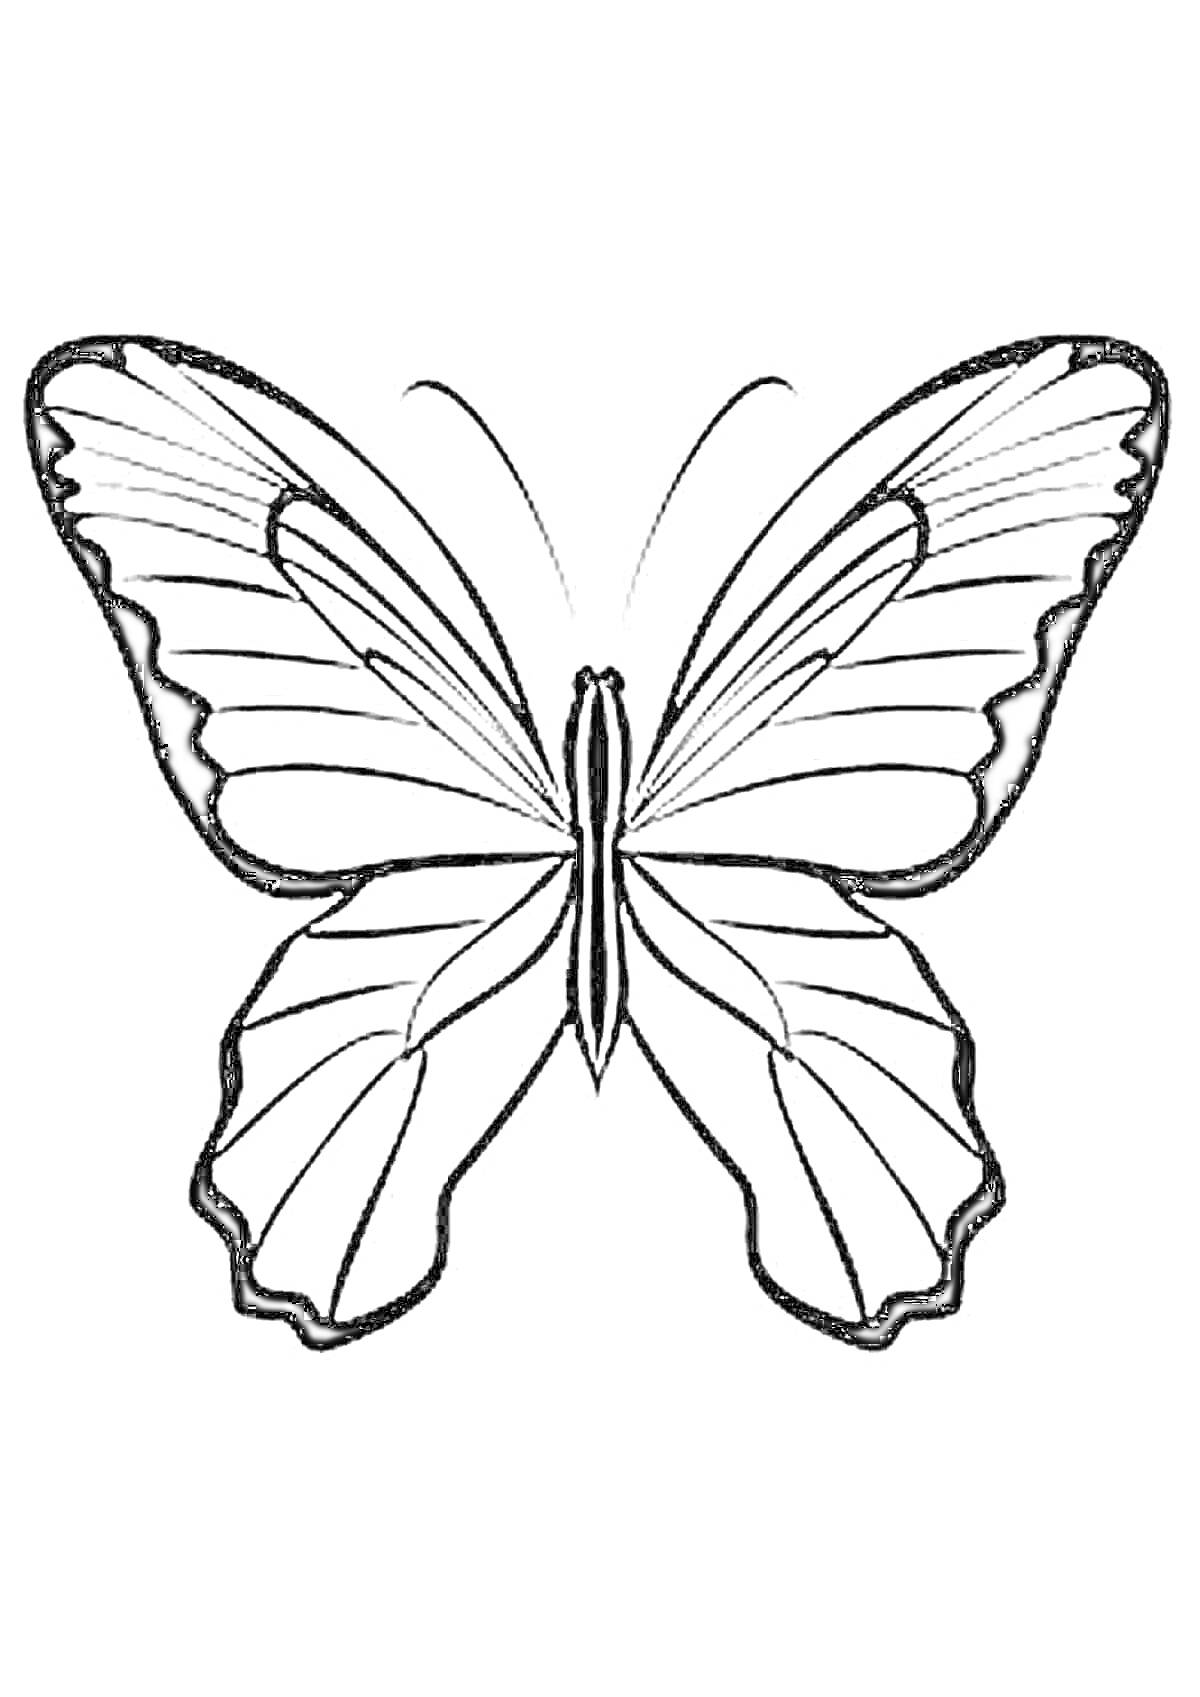 Раскраска Трафарет бабочки с детализированными крыльями